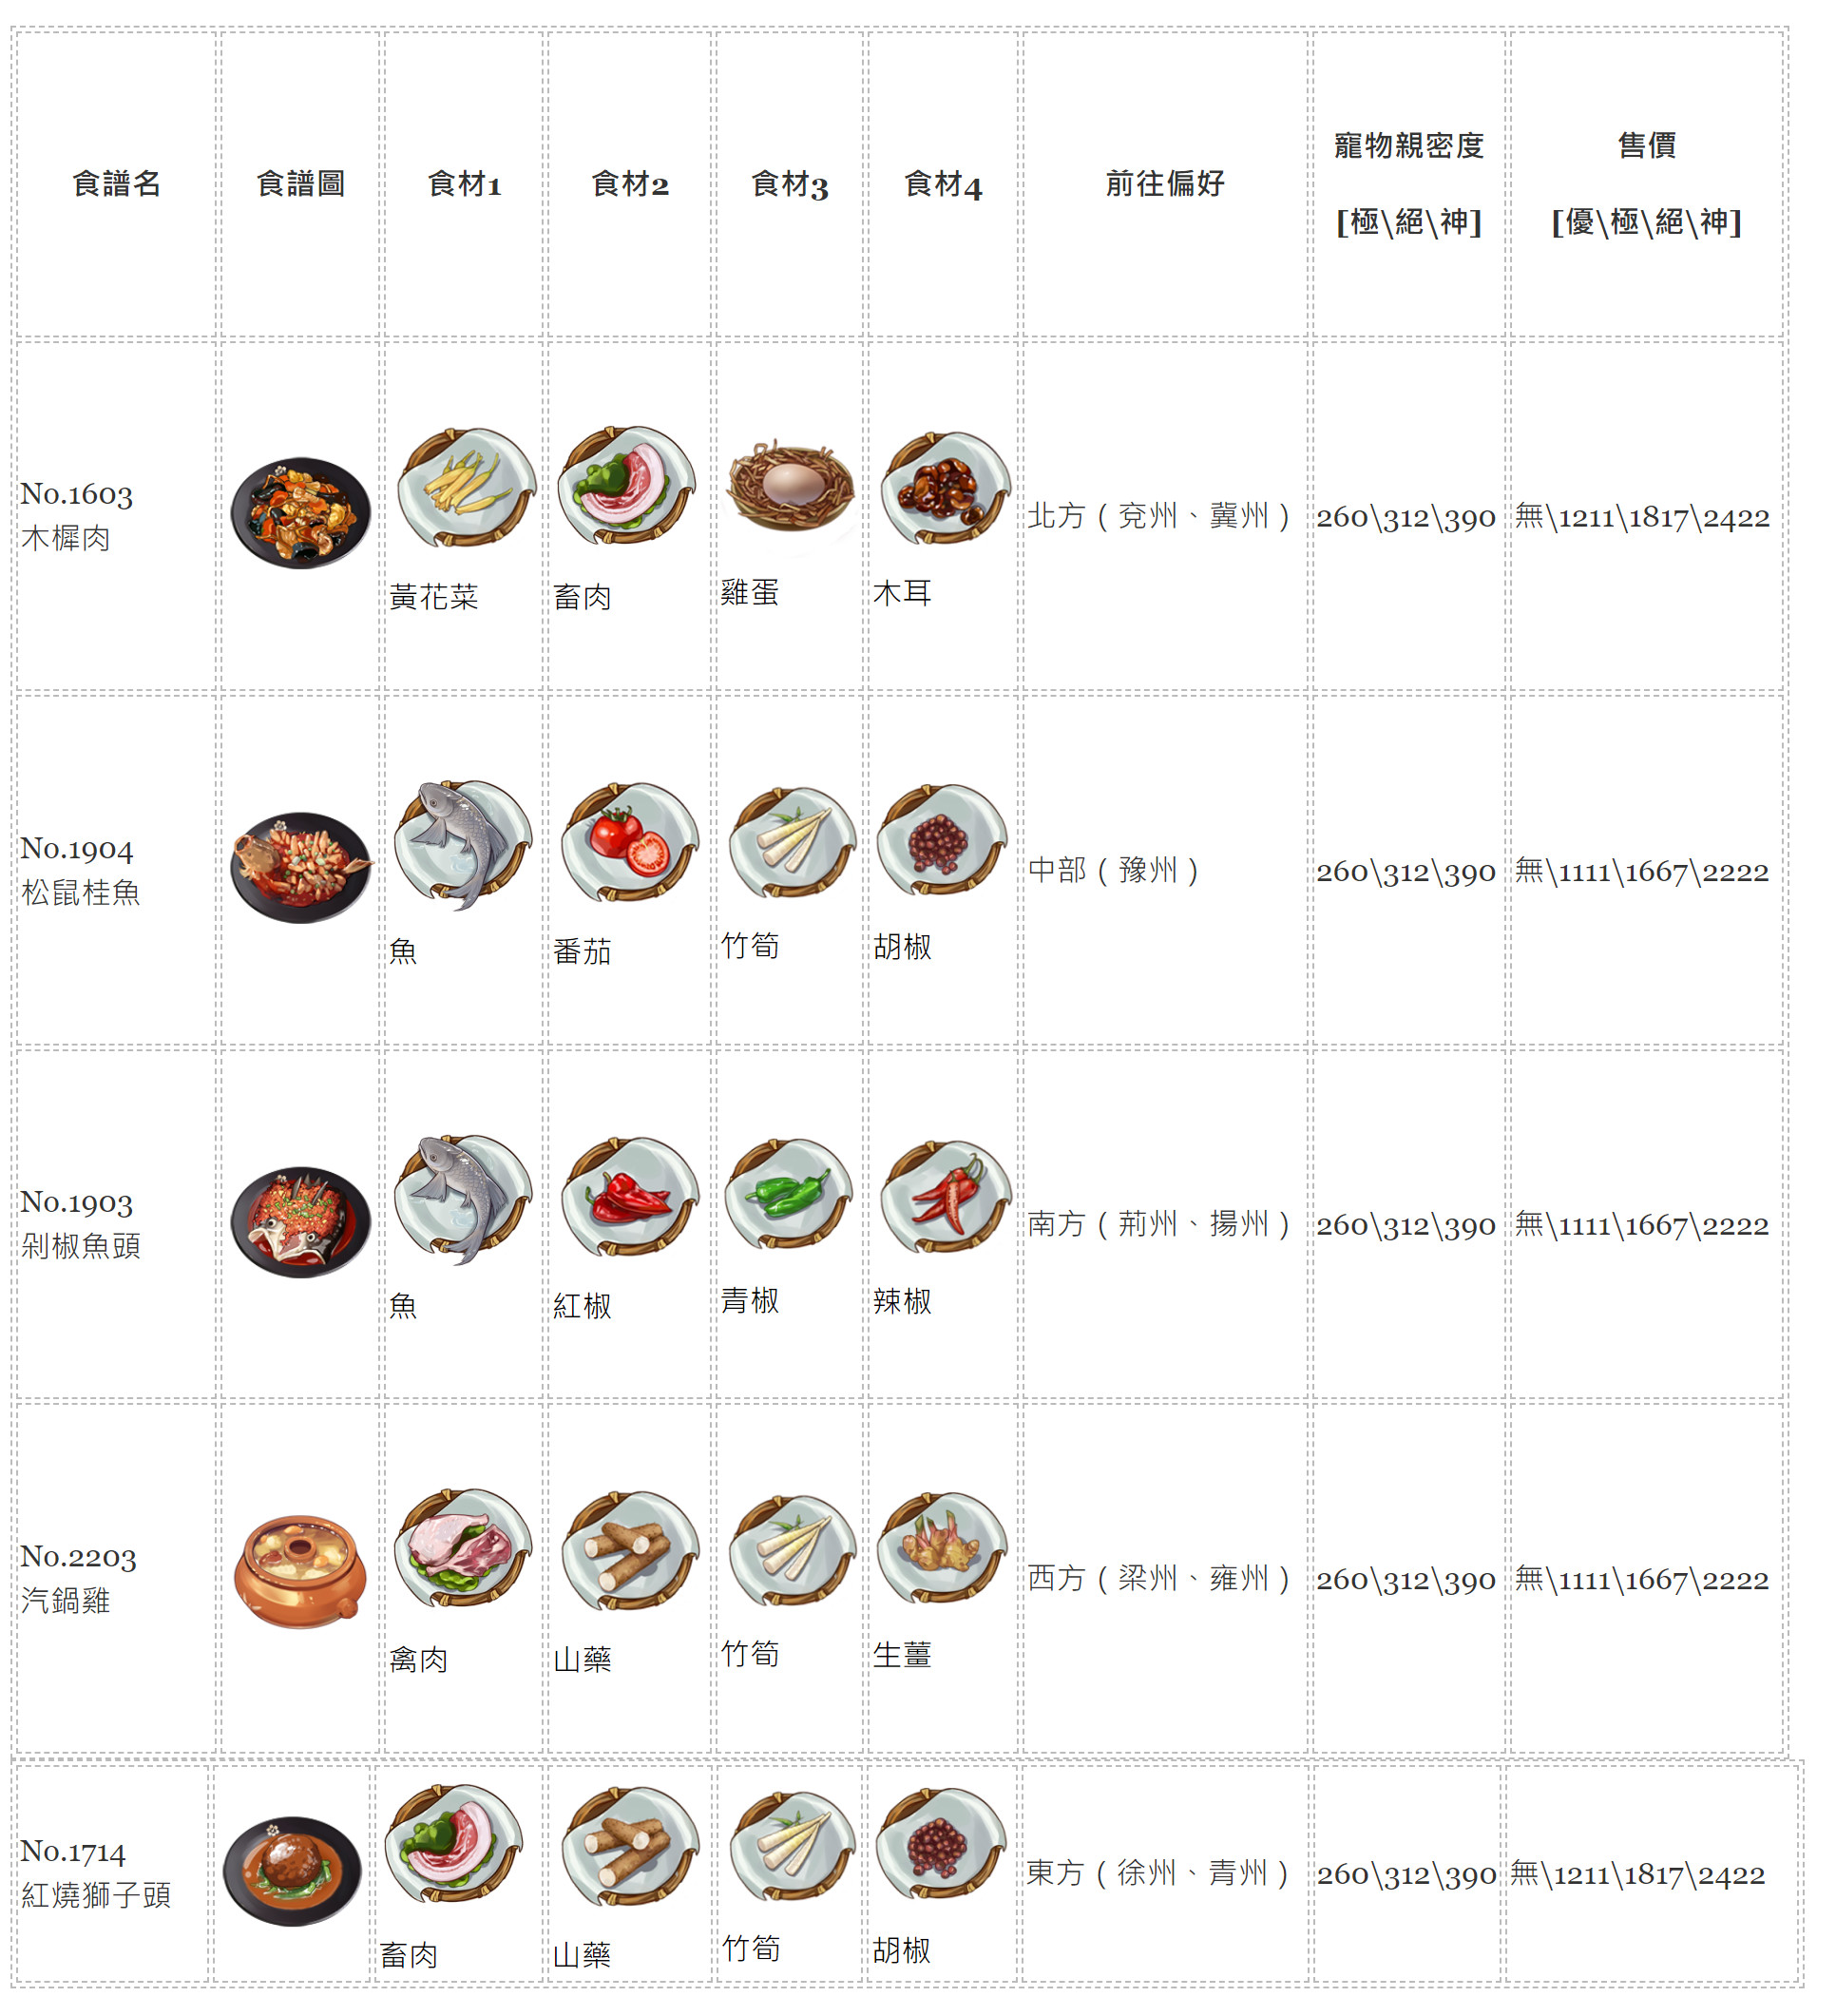 【江湖悠悠】料理食譜大全，1~11完美料理配方、普通食材食譜、旅行方向、寵物糧親密度、料理售價。 - 大全 - 敗家達人推薦